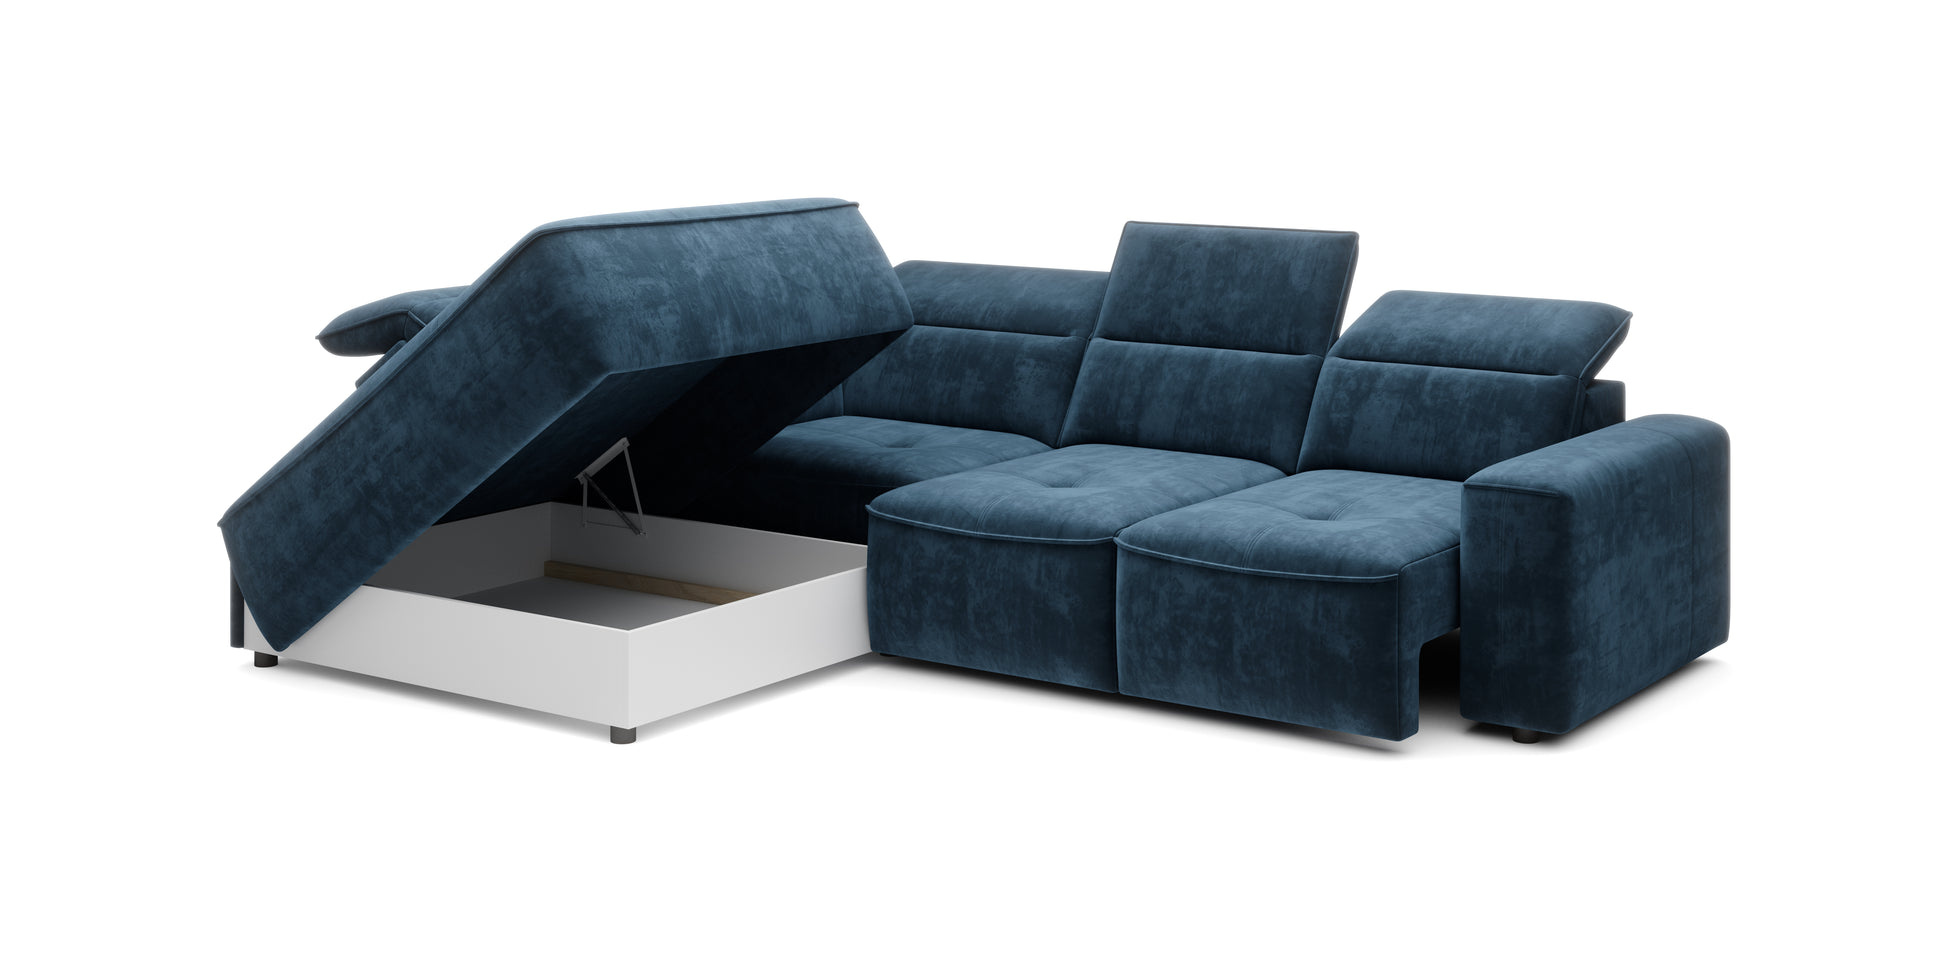 Dīvāns KOLO L 296/113/227 cm - N1 Home